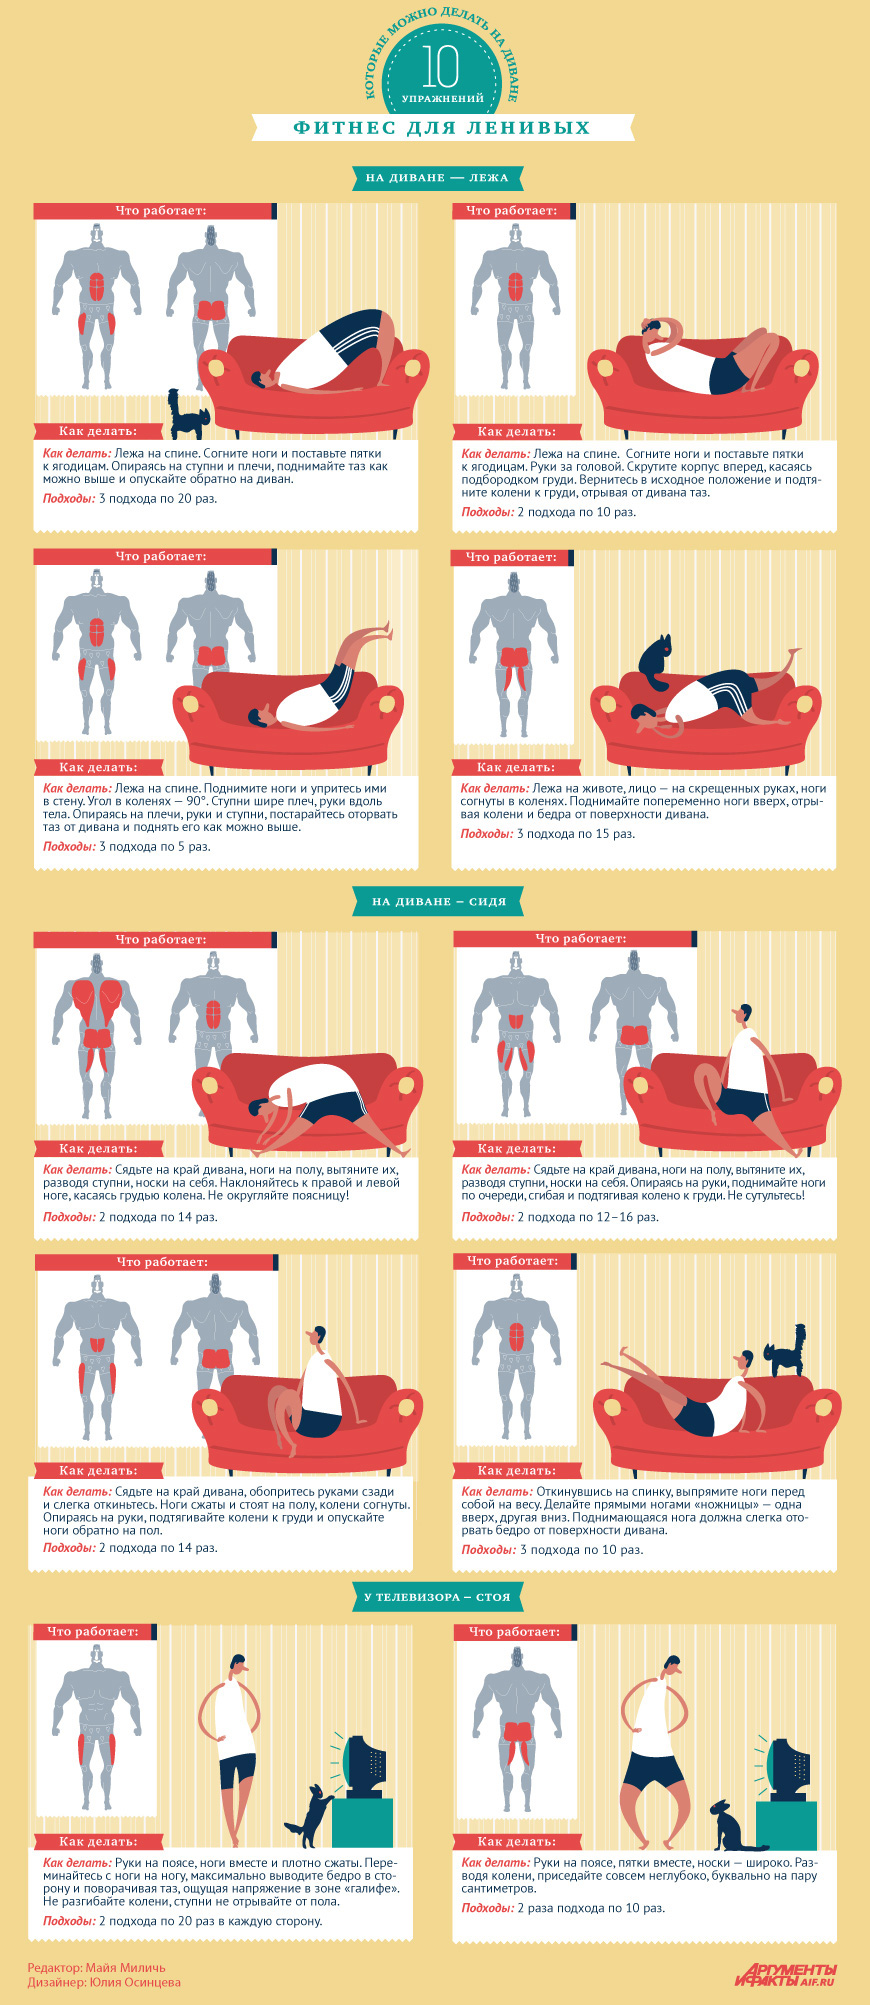 Фитнес для ленивых: 10 упражнений, которые можно делать на диване